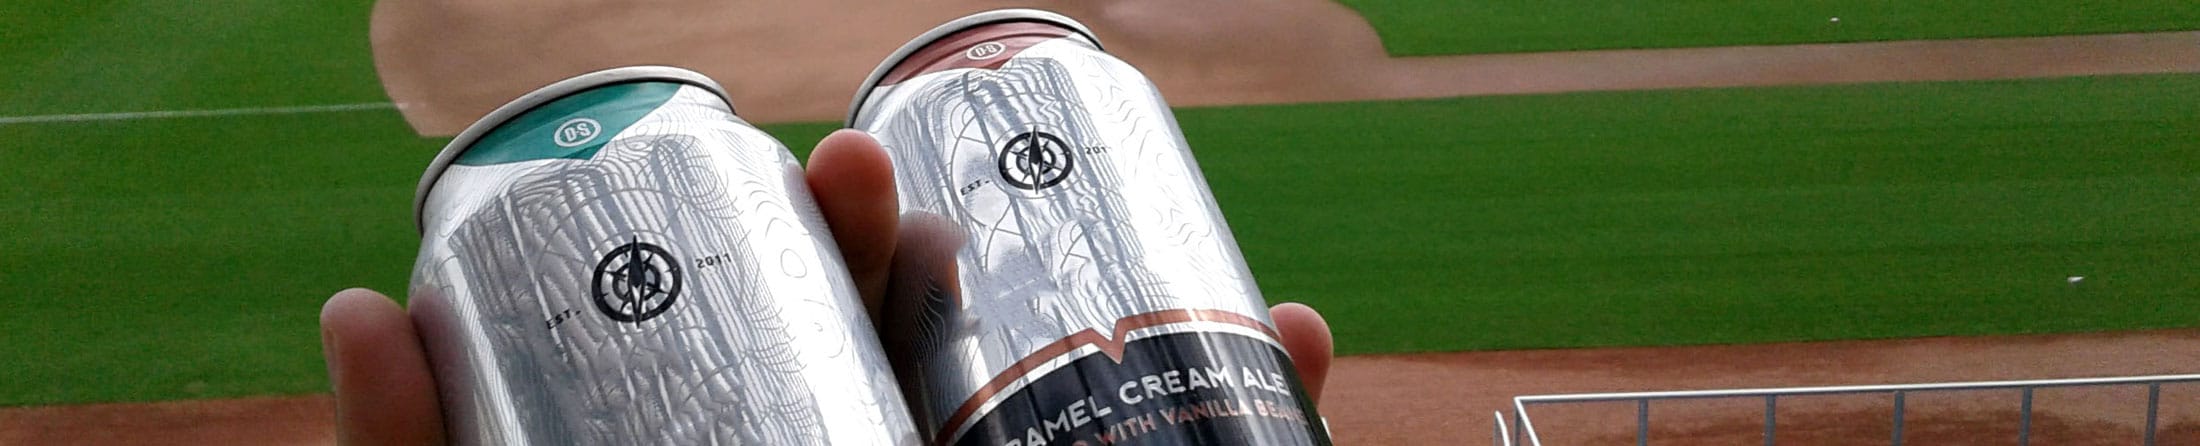 Lollygagger Kolsch - Bull Durham Beer - Baseball Life